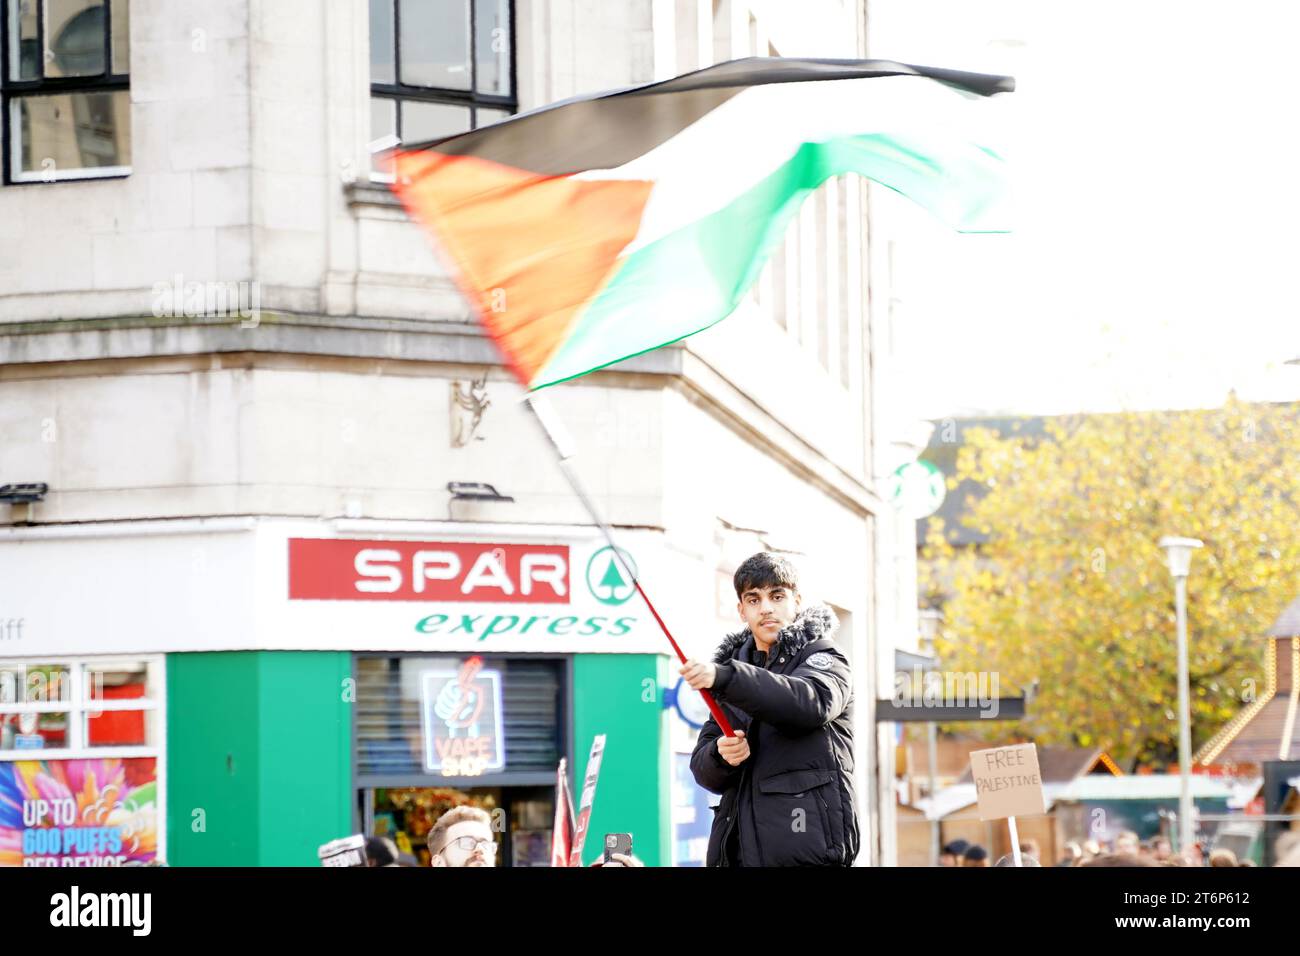 Cardiff, pays de Galles 11 novembre 2023. Marche pour la Palestine. marche pacifique de protestation dans le centre-ville de Cardiff. Garçon agite un drapeau palestinien. Crédit Penallta Photographics / Alamy Live News Banque D'Images